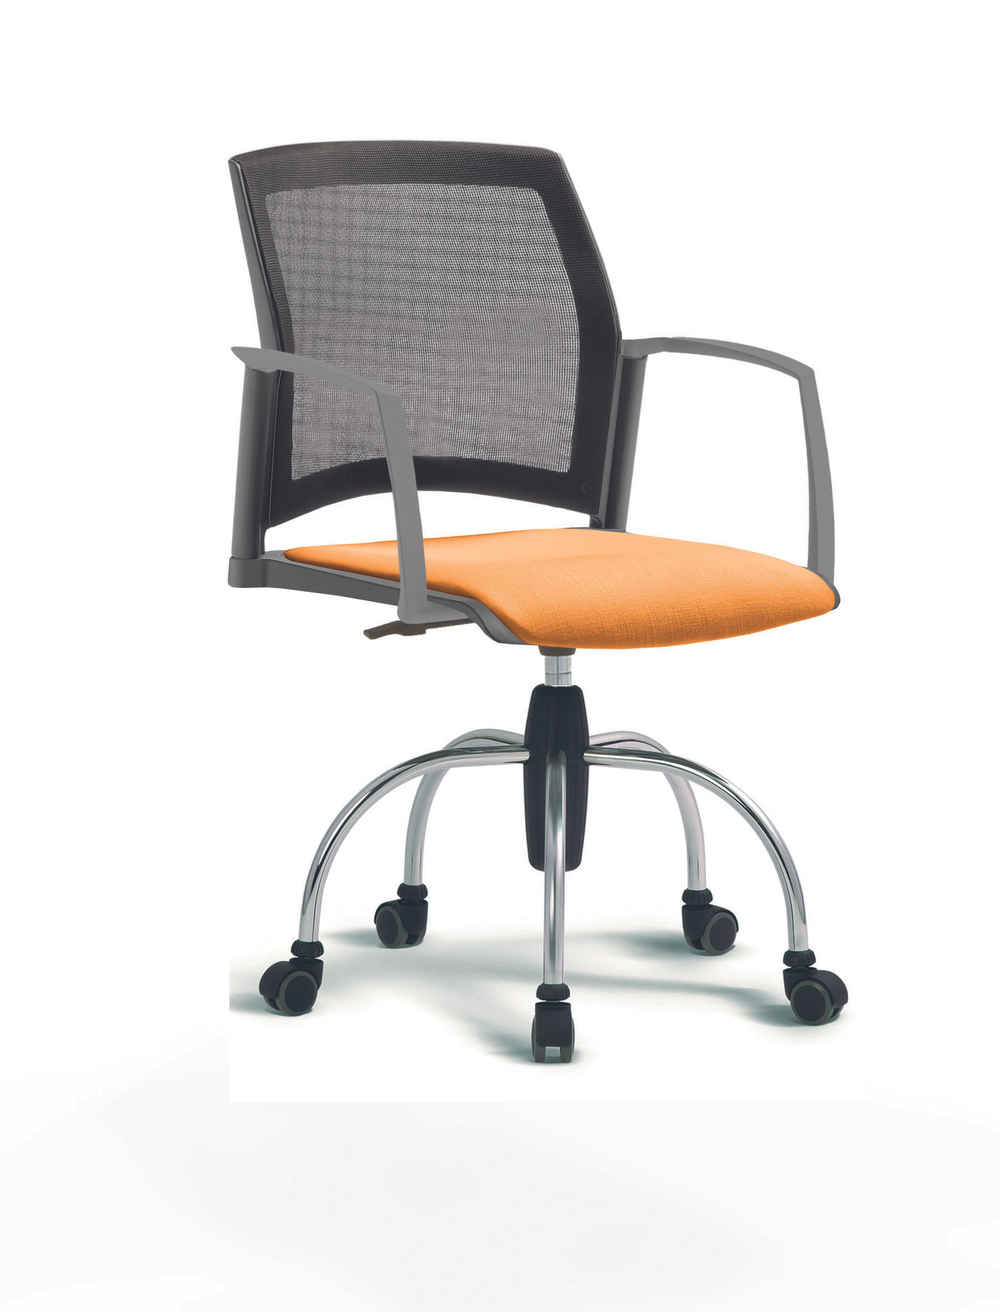 Кресло Rewind каркас хромированный, пластик серый, база паук хромированная, с закрытыми подлокотниками, сидение оранжевое, спинка-сетка